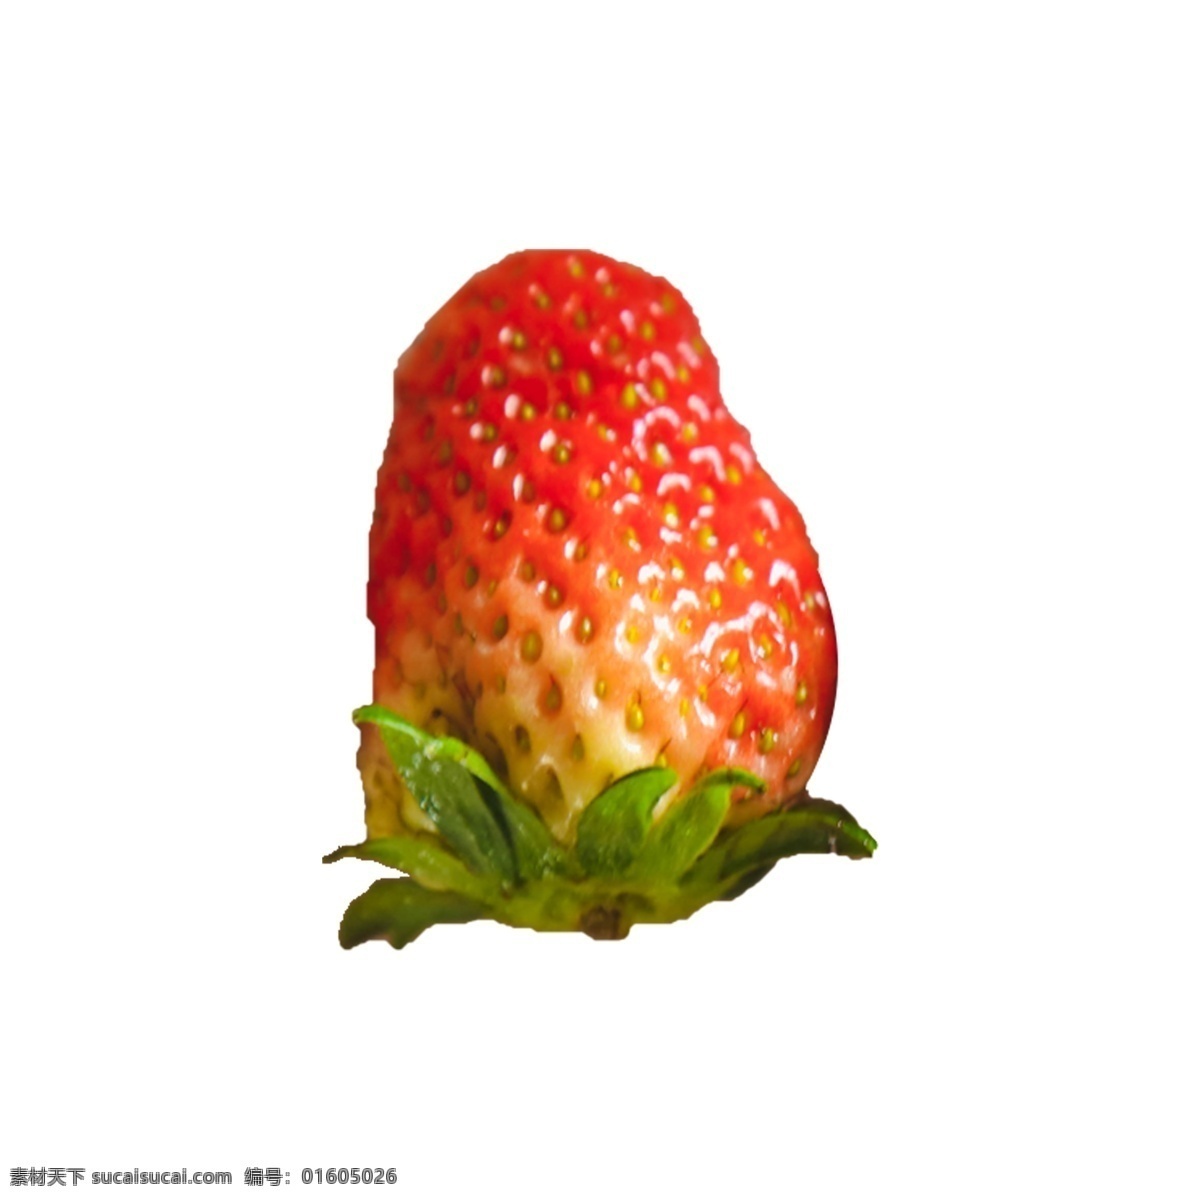 一个 新鲜 草莓 红色草莓 一个草莓 水果 植物 营养 美味 甜食 奶油草莓 绿叶 叶子